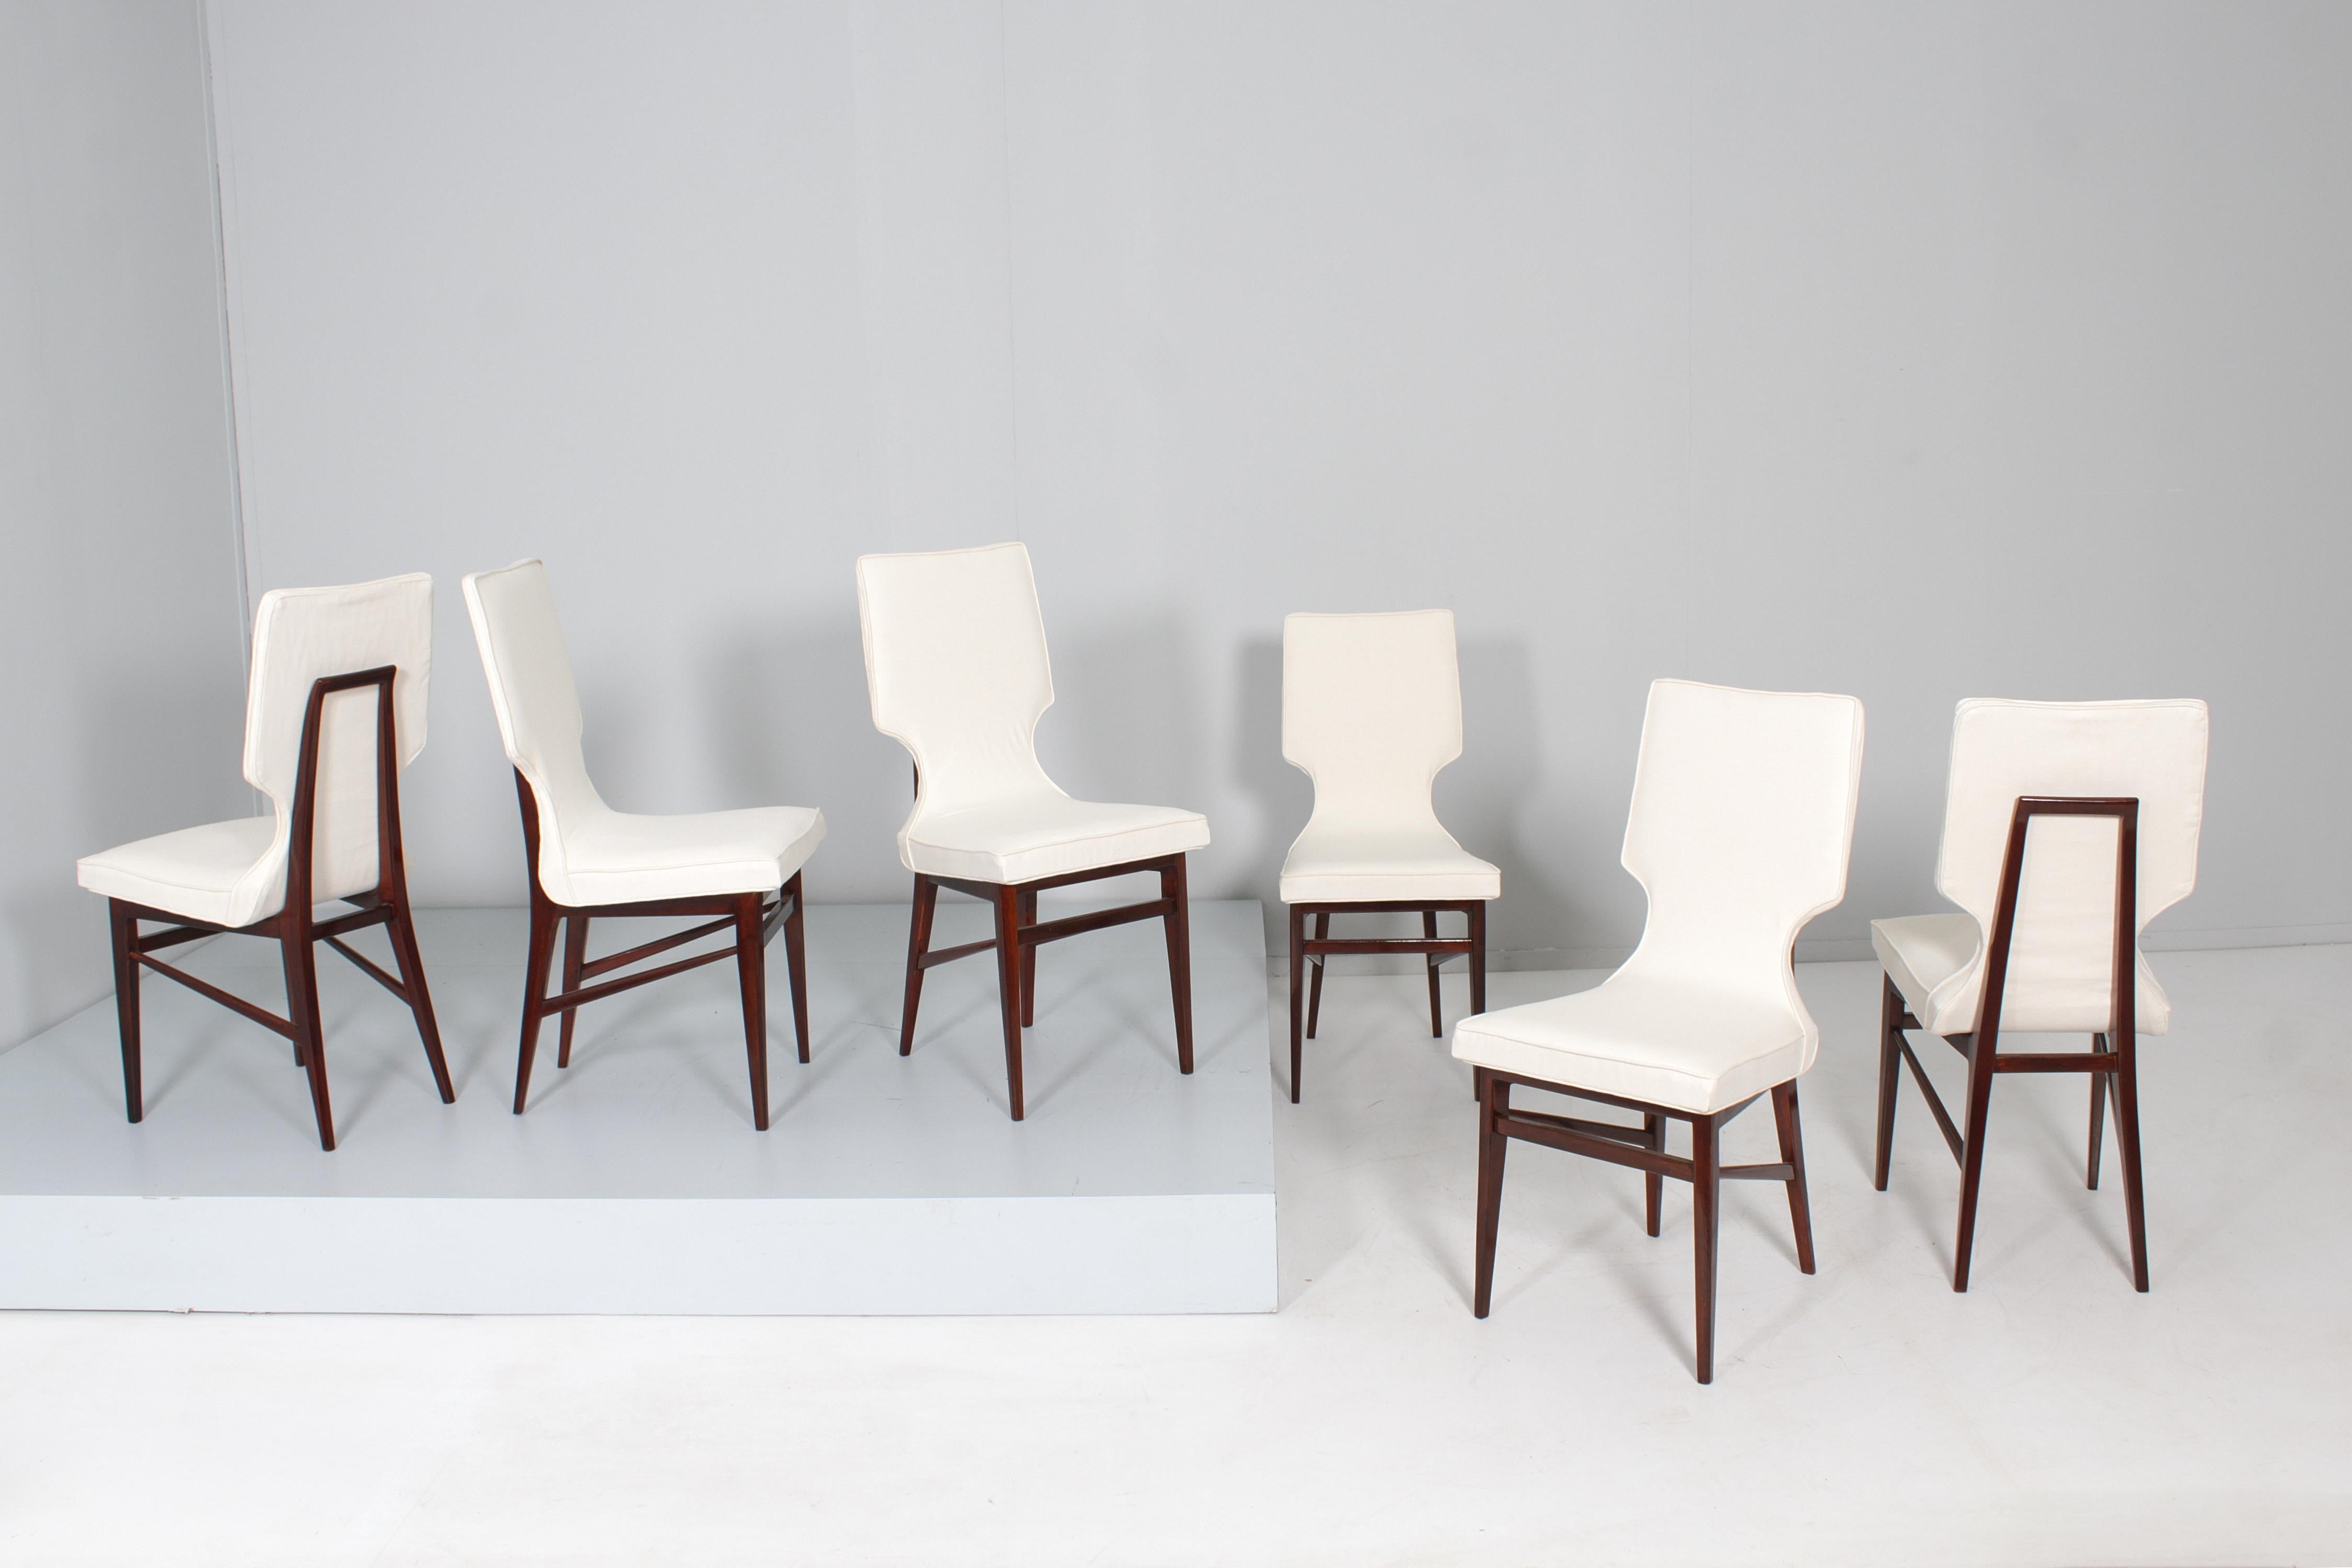 Wunderschönes Set von sechs restaurierten Stühlen mit harmonischem und geometrischem Design, mit einer Struktur aus geformtem und geschwungenem Holz und einem Pad aus kostbarem weißem Stoff, das Ico Parisi zugeschrieben werden kann, hergestellt in